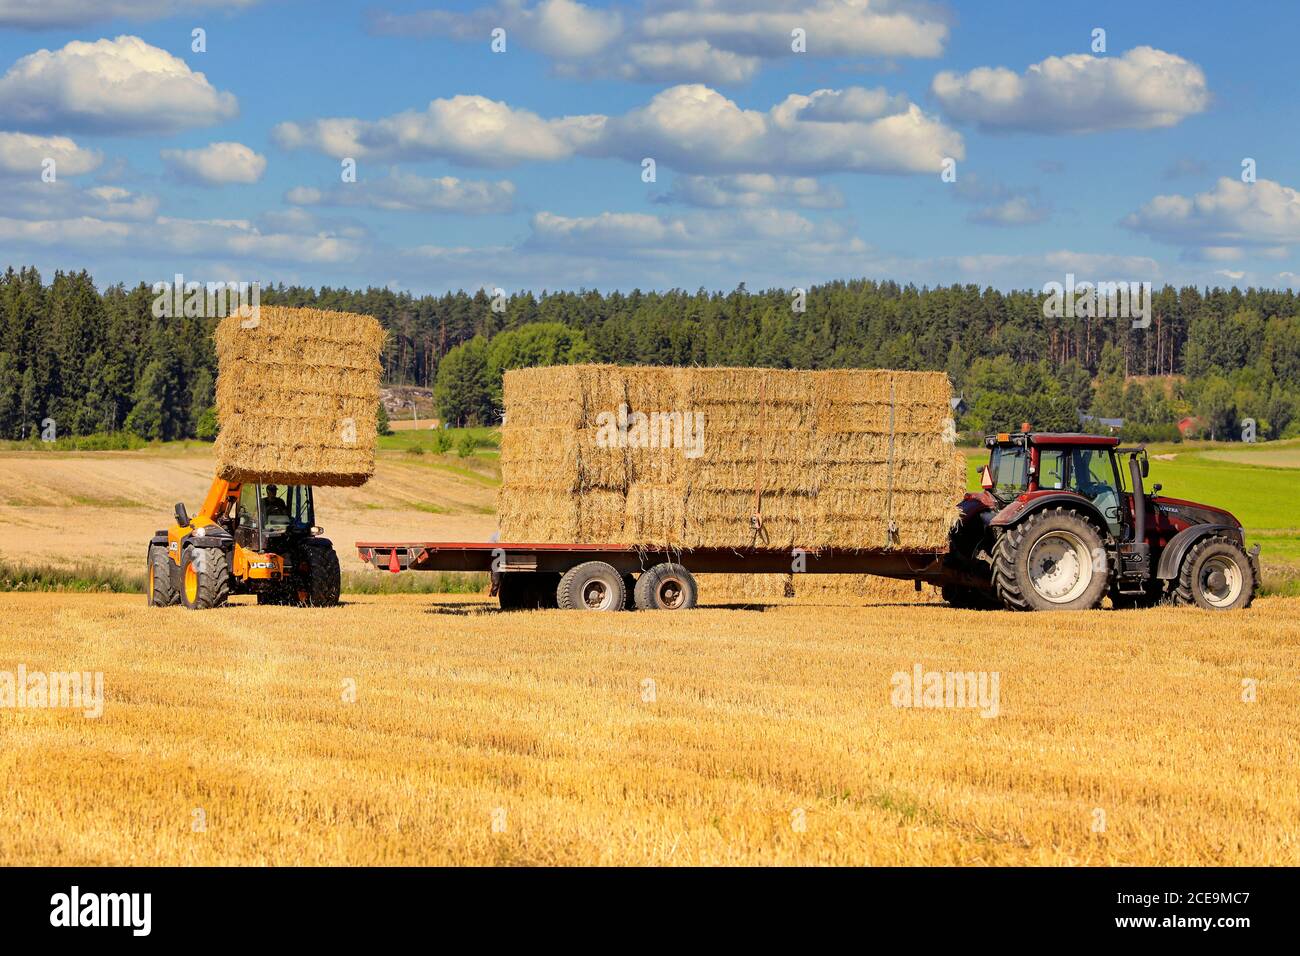 L'empilage de balles de paille sur un tracteur Valtra a tiré une remorque agricole avec le téléchargeur JCB T4 dans un champ de chaume. Salo, Finlande. 16 août 2020. Banque D'Images